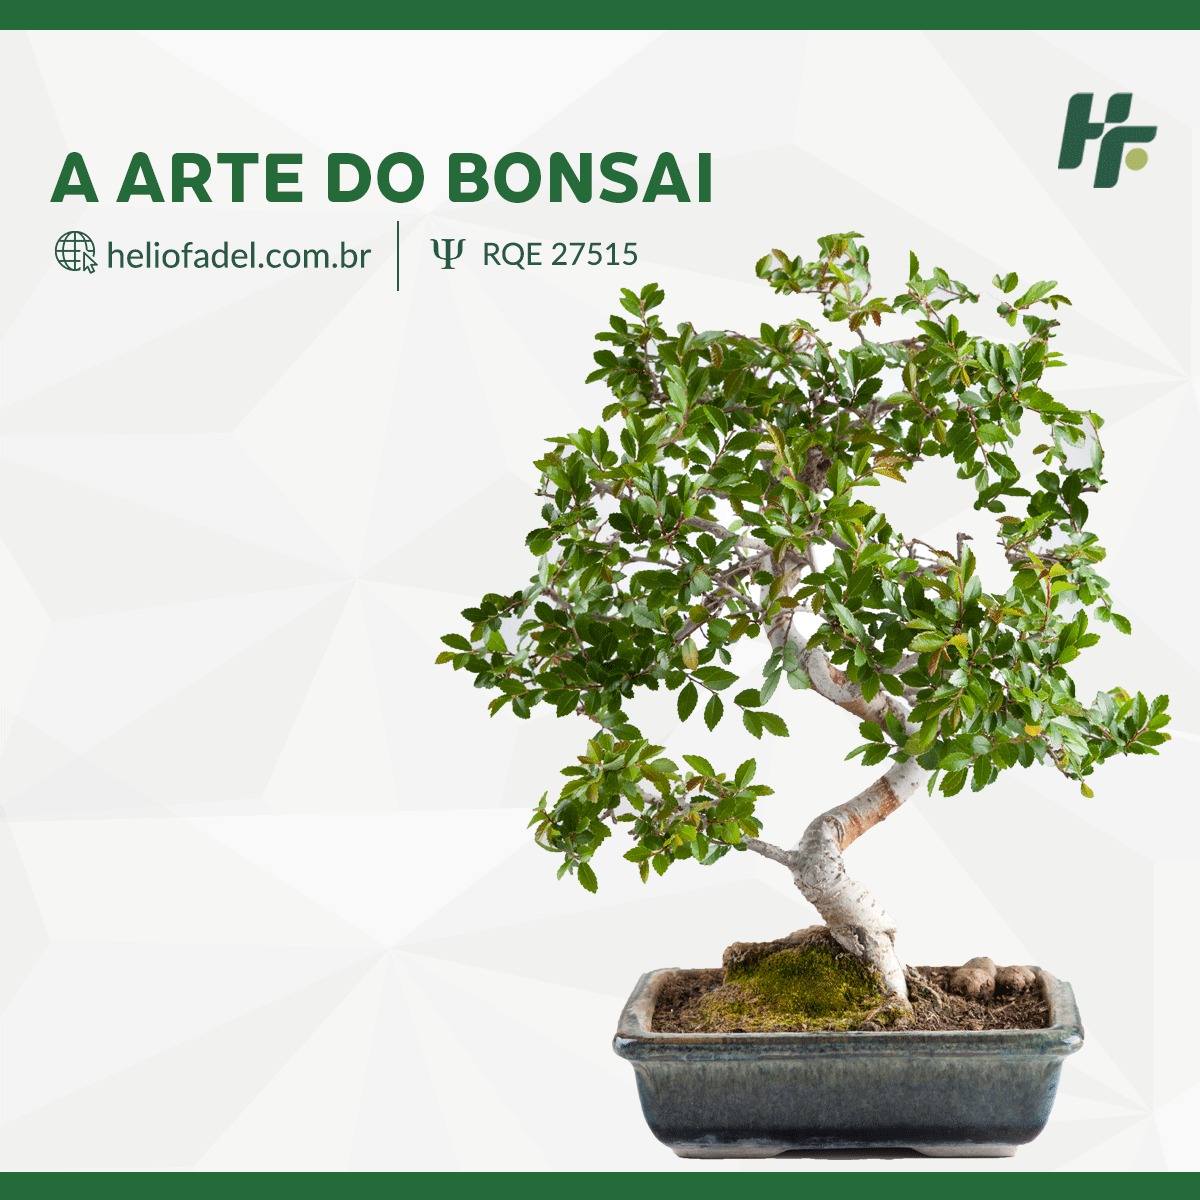 A arte do bonsai - Conheça a arte milenar do Bonsai